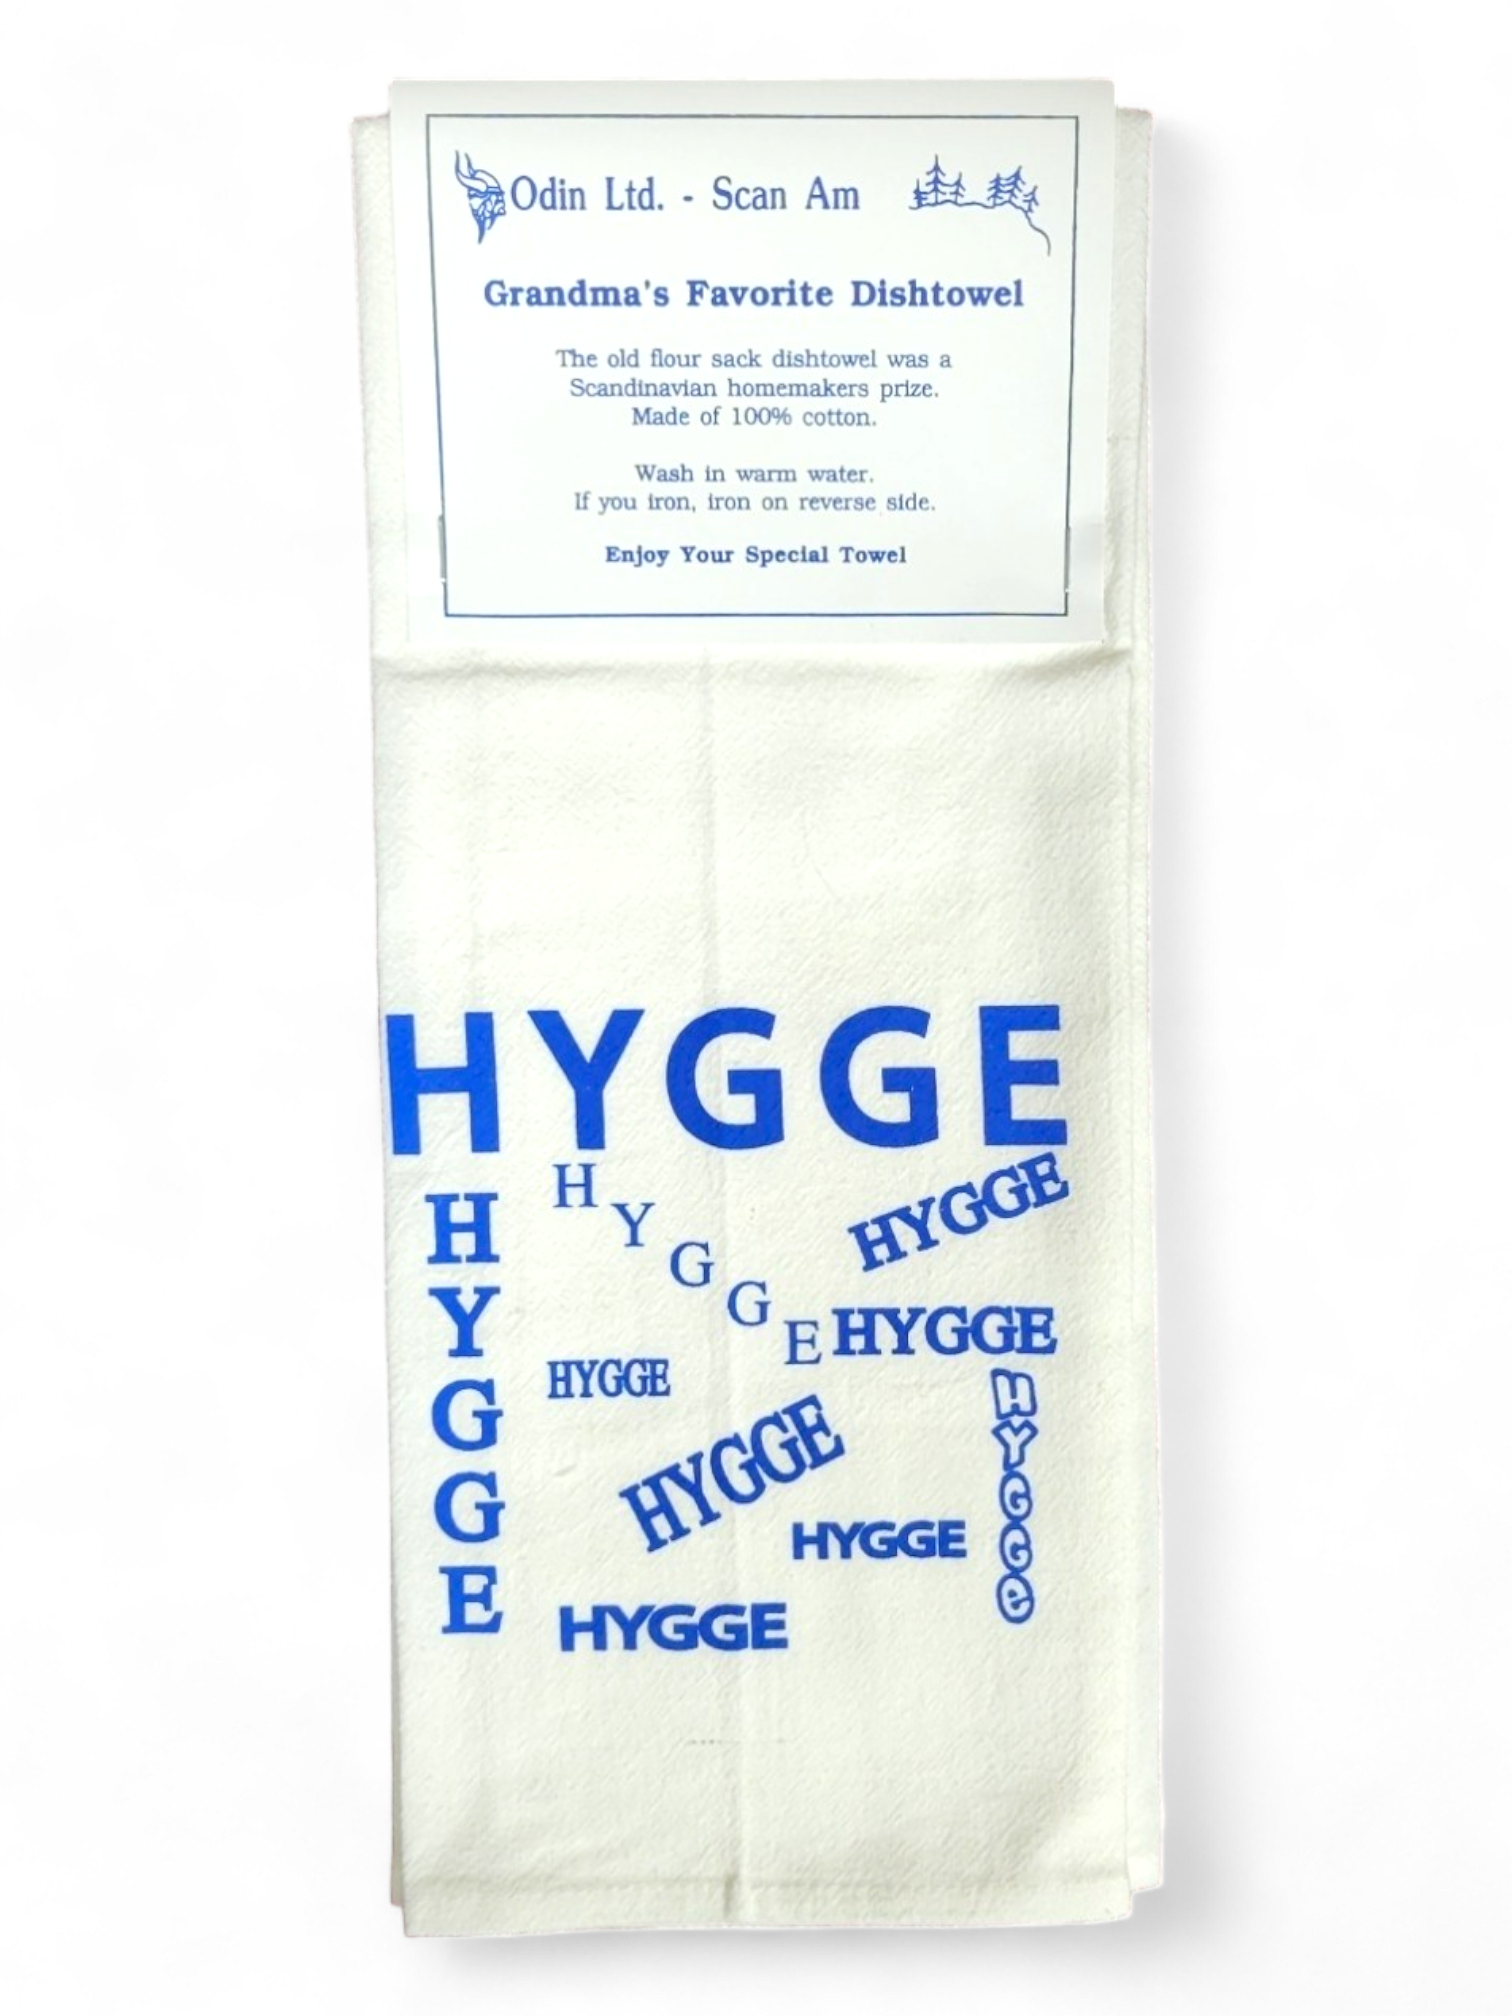 Tea Towel: "Hygge" Grandma's Favorite Dishtowel